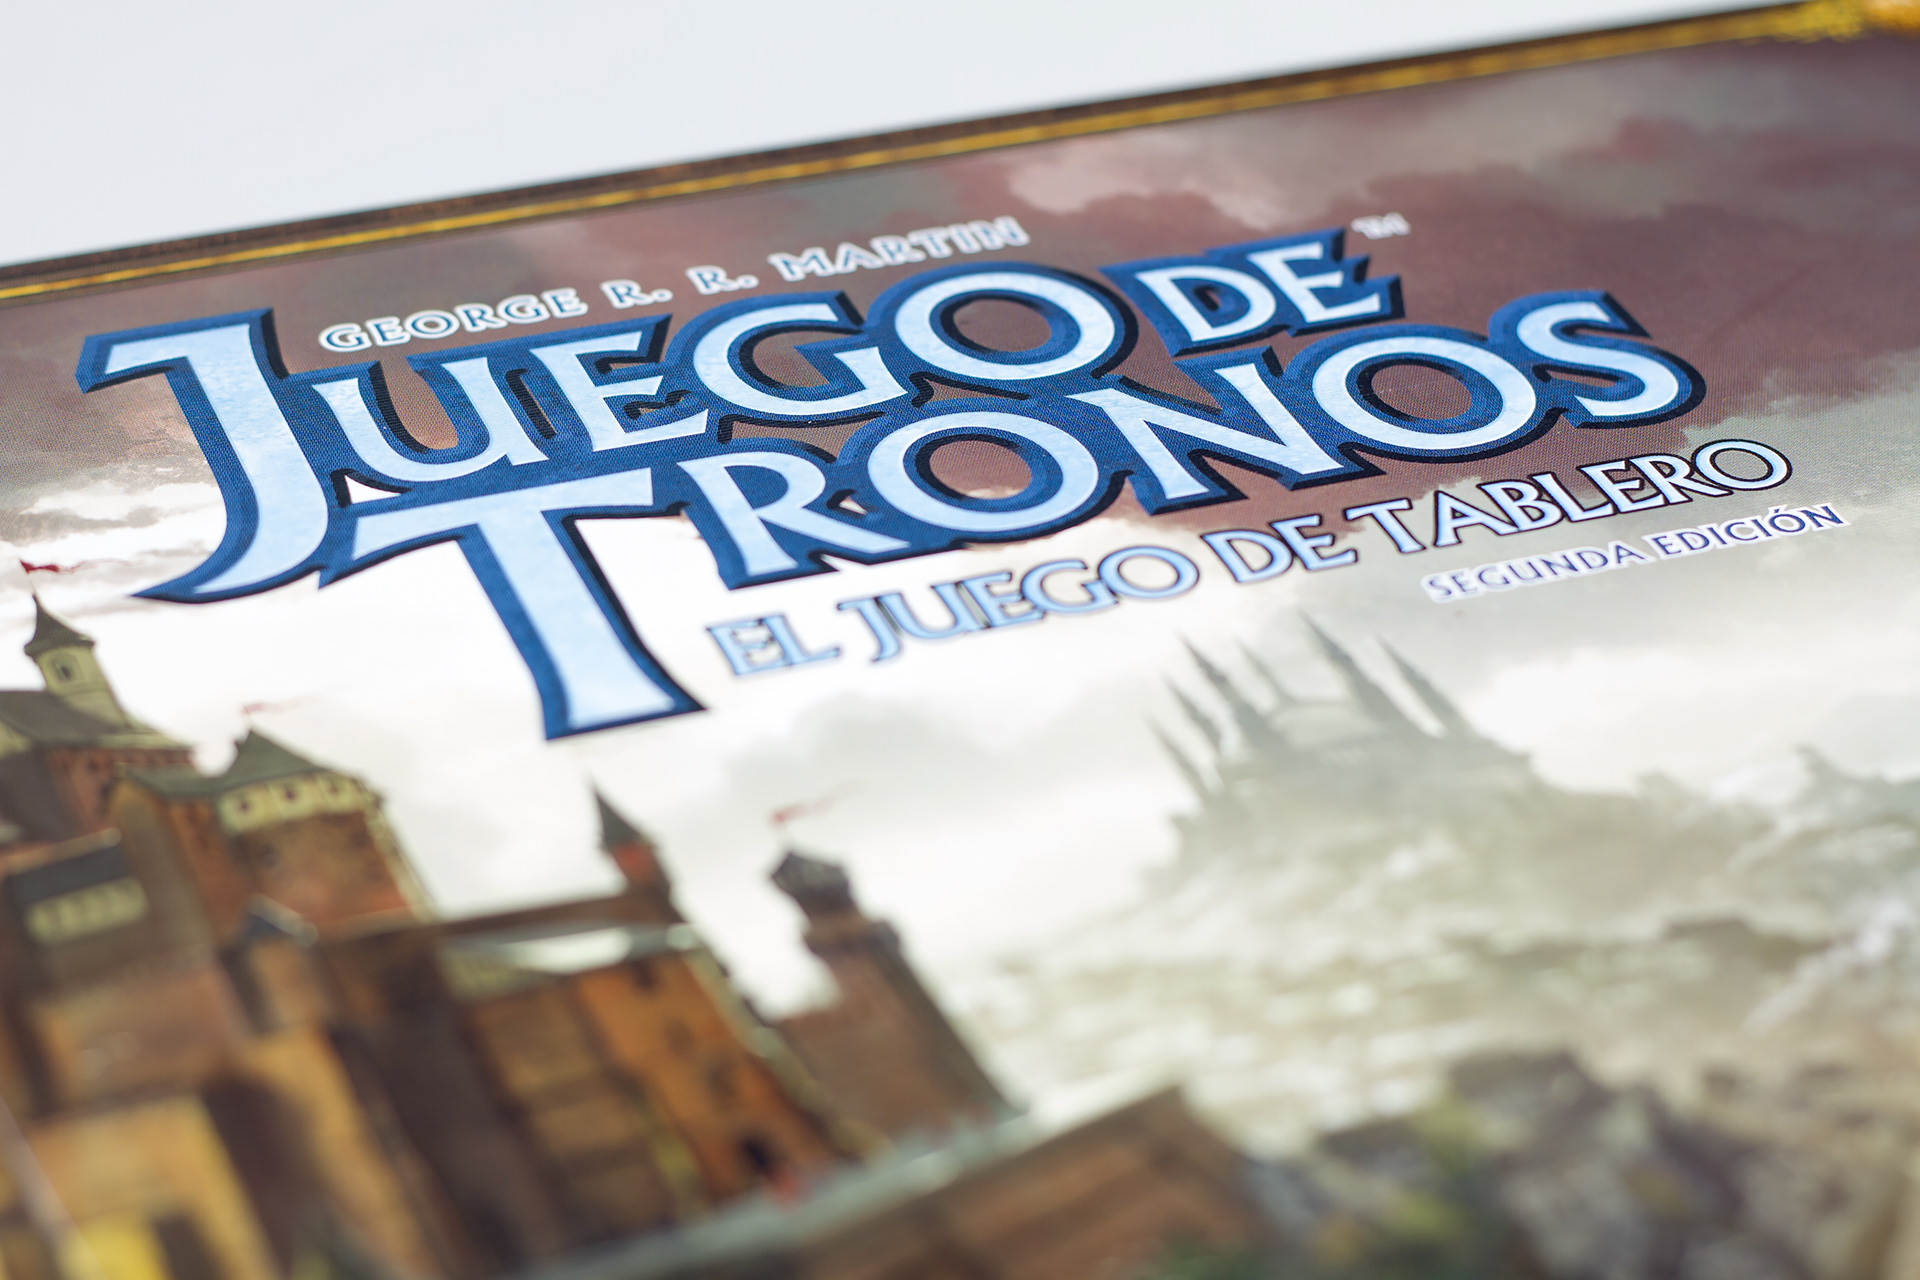 Juego de tronos (Spanish Edition)